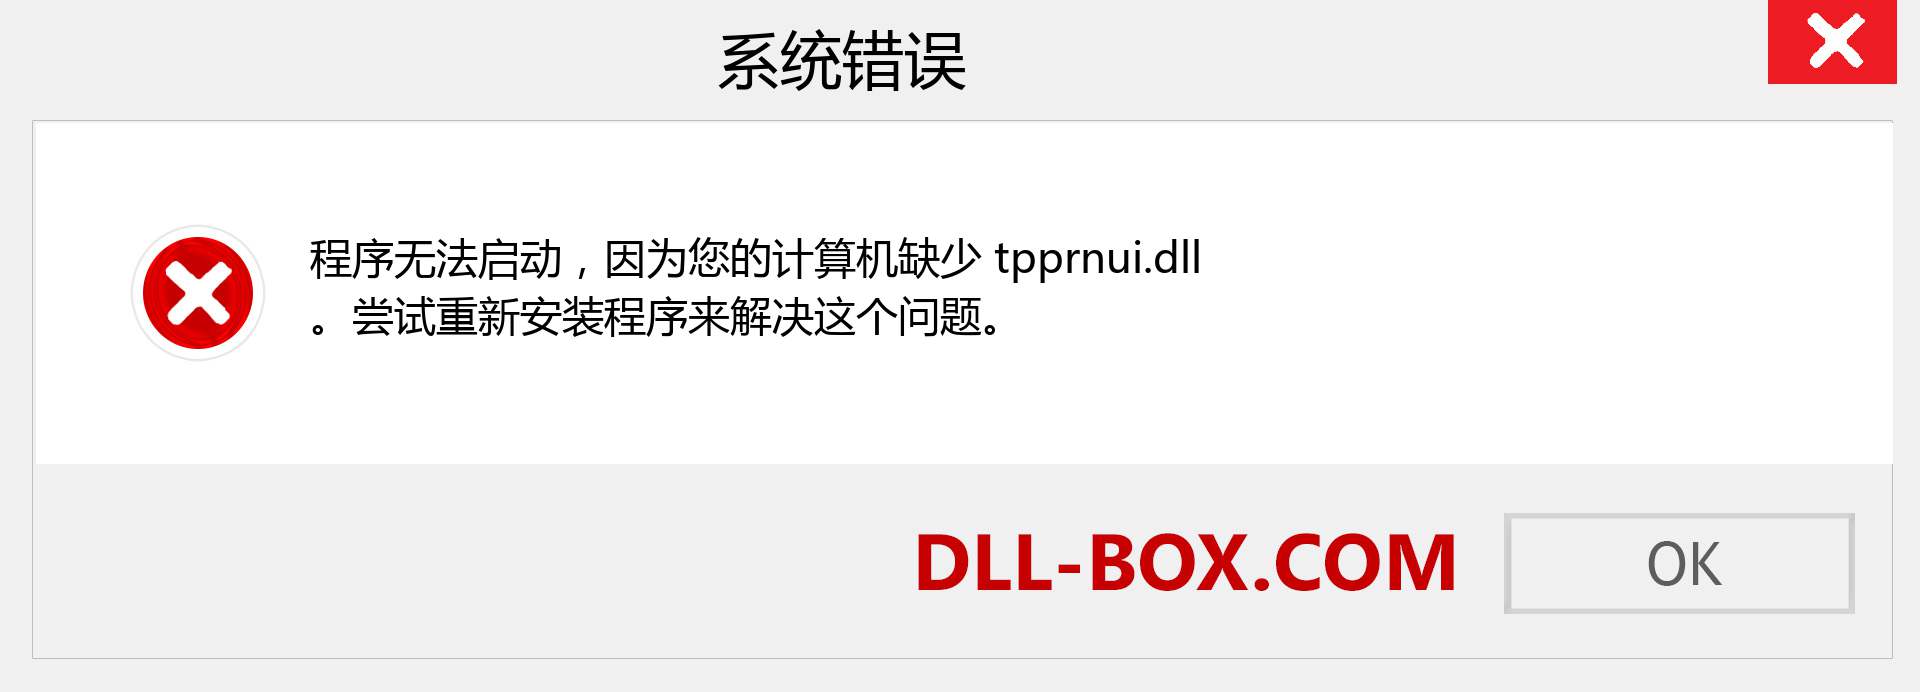 tpprnui.dll 文件丢失？。 适用于 Windows 7、8、10 的下载 - 修复 Windows、照片、图像上的 tpprnui dll 丢失错误